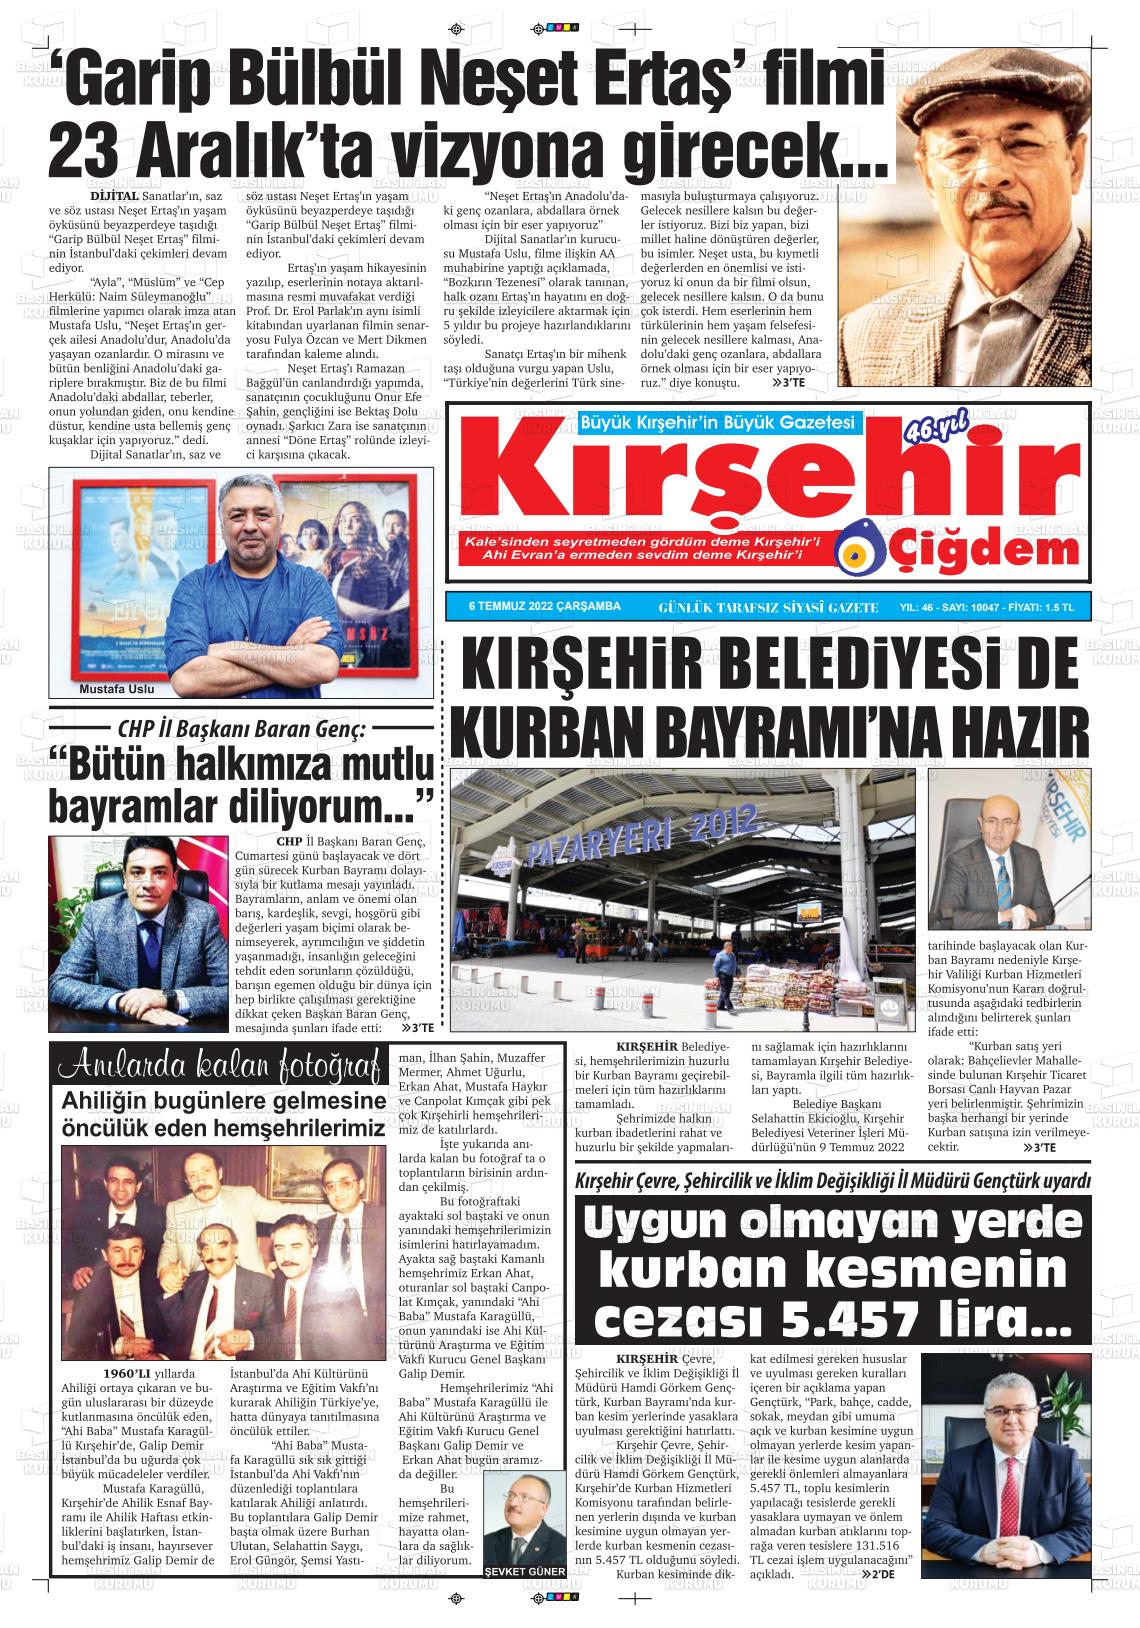 06 Temmuz 2022 Kırşehir Çiğdem Gazete Manşeti